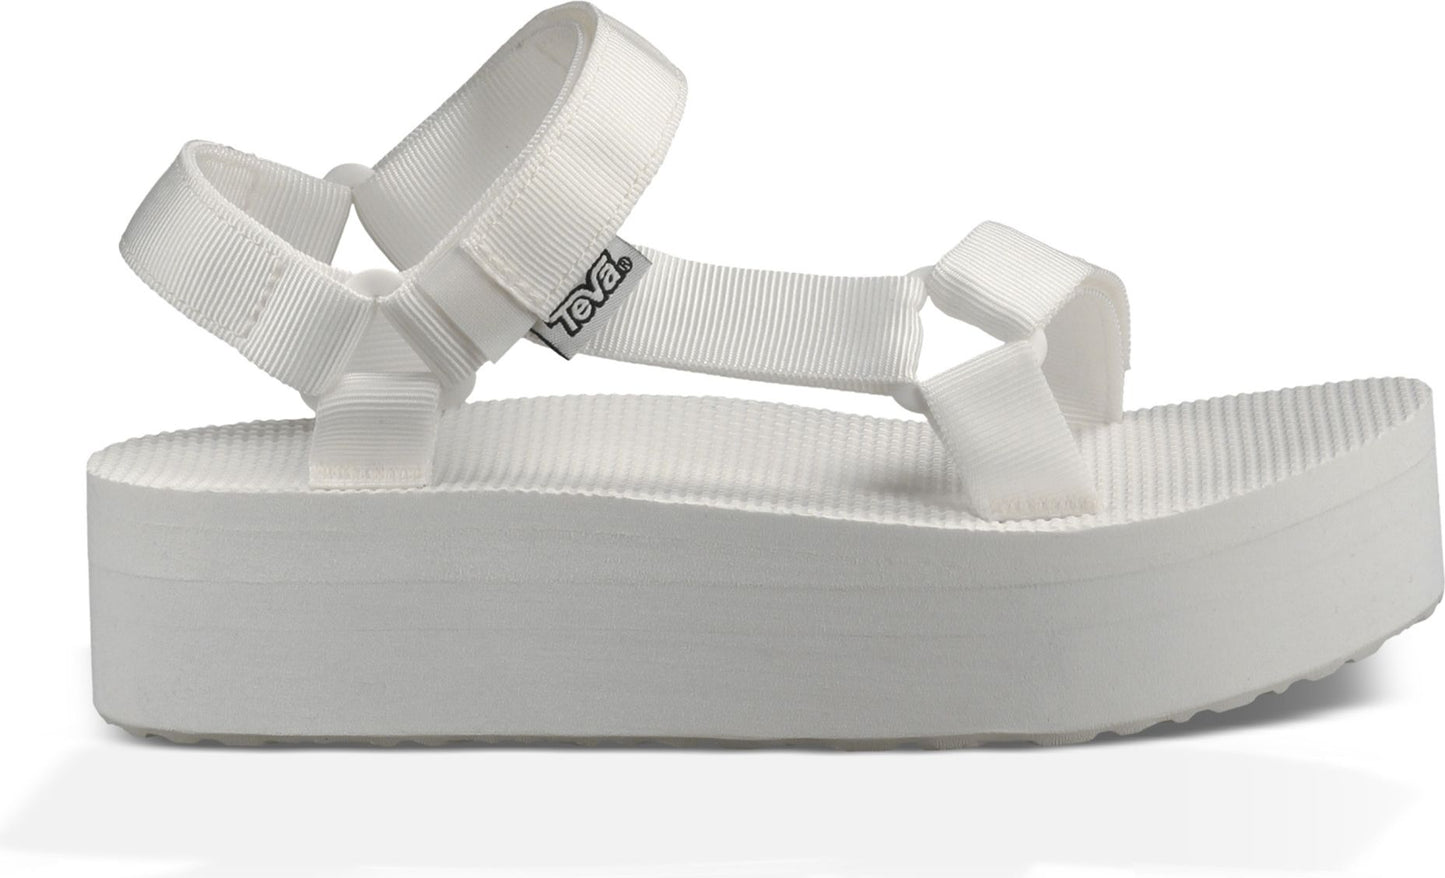 Teva Sandals Flatform Universal Bright White